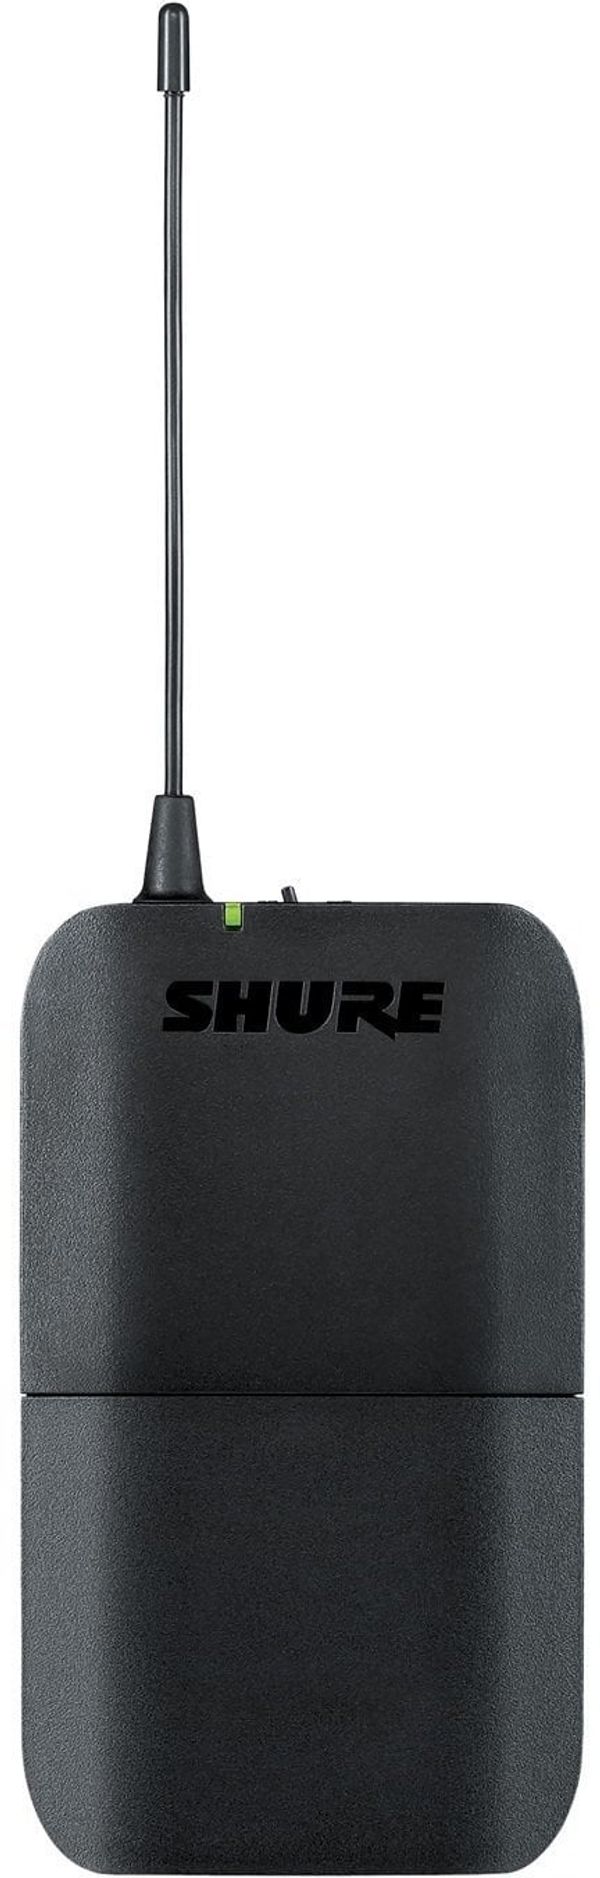 Shure Shure BLX1 M17: 662-686 MHz